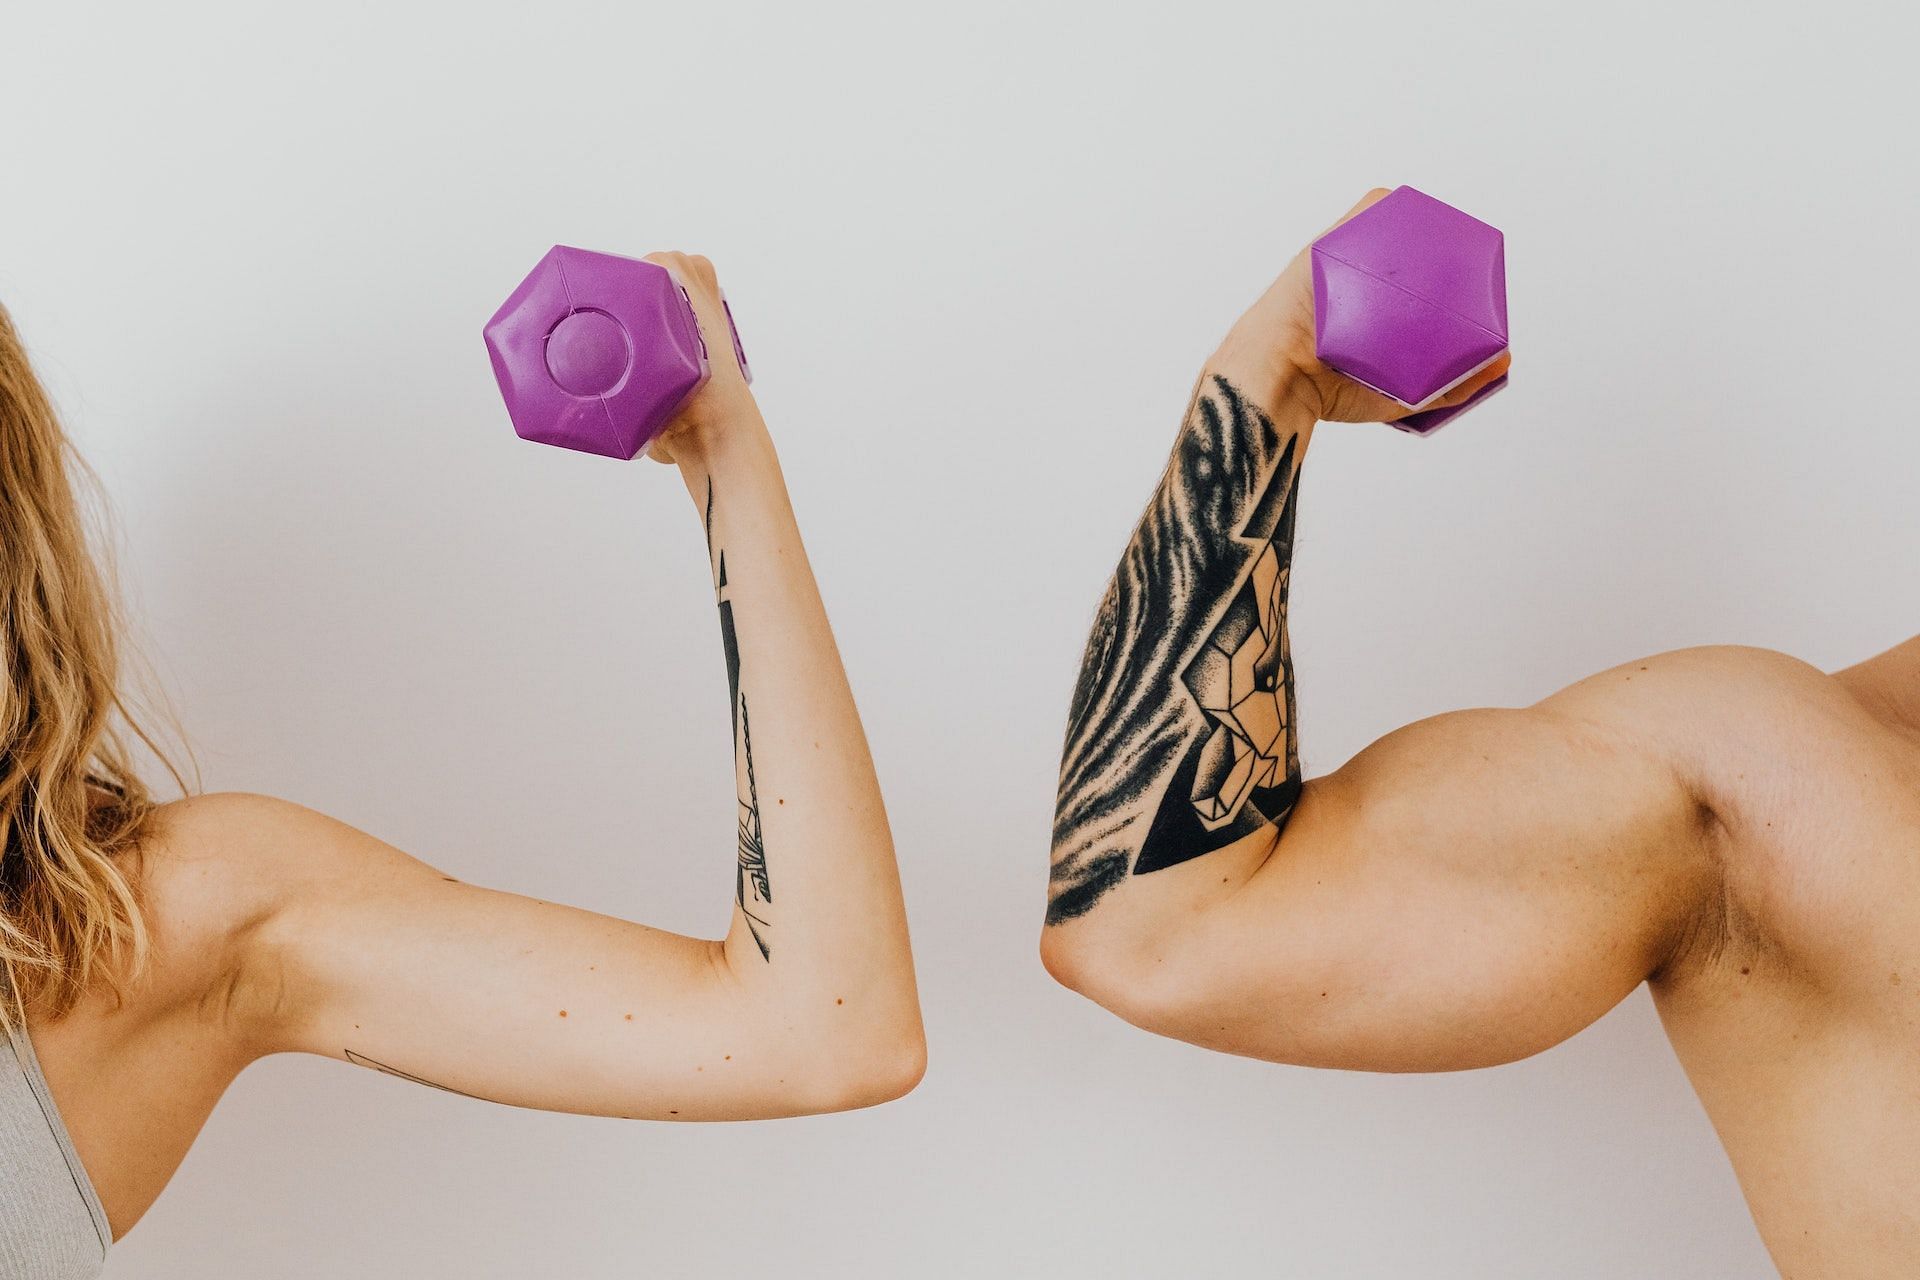 Triceps exercises strengthen the entire arm. (Photo via Pexels/Karolina Grabowska)